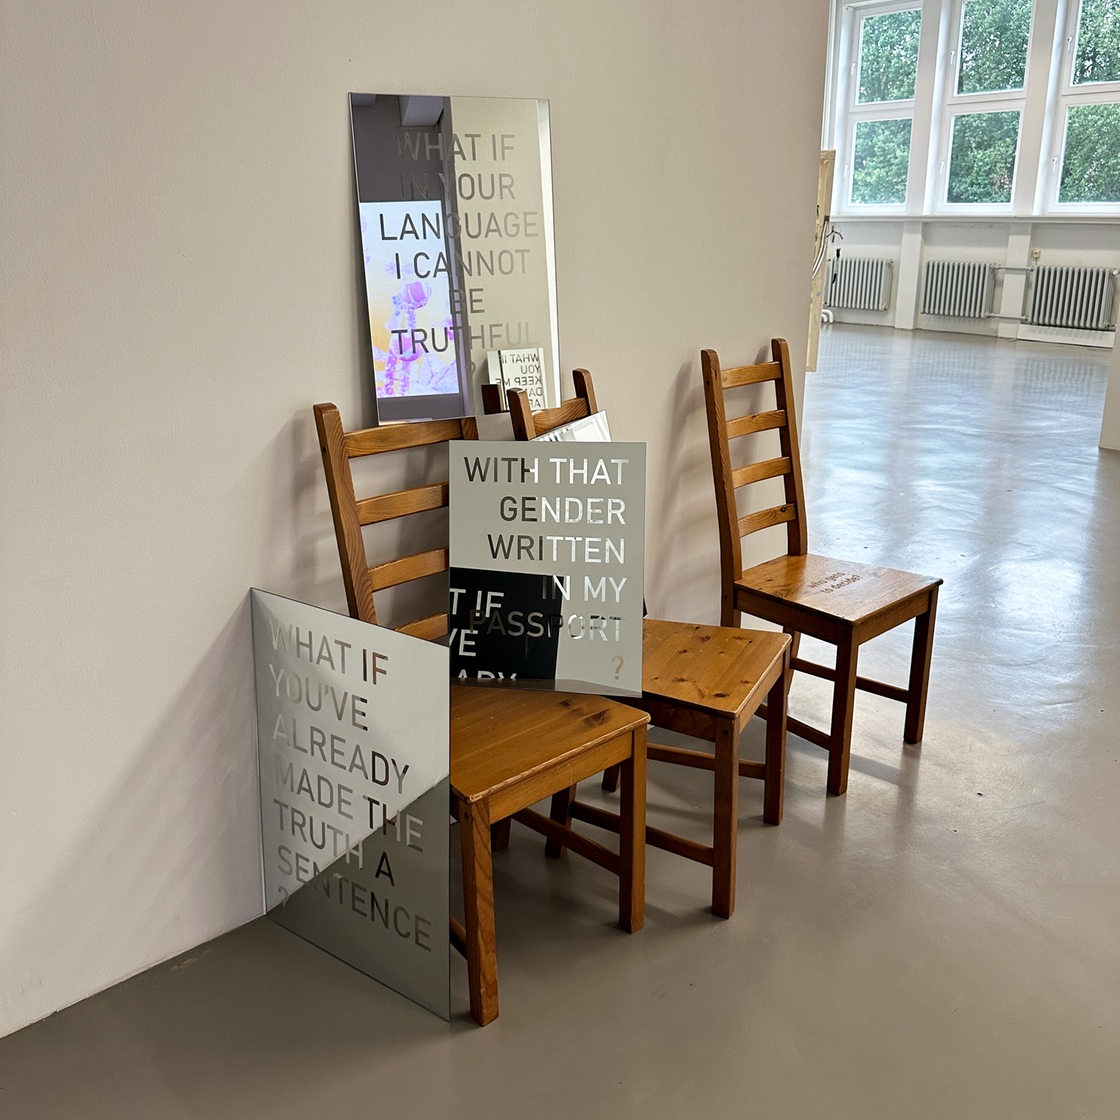 3 Stühle mit verschiedenen Plakaten stehen an einer Wand